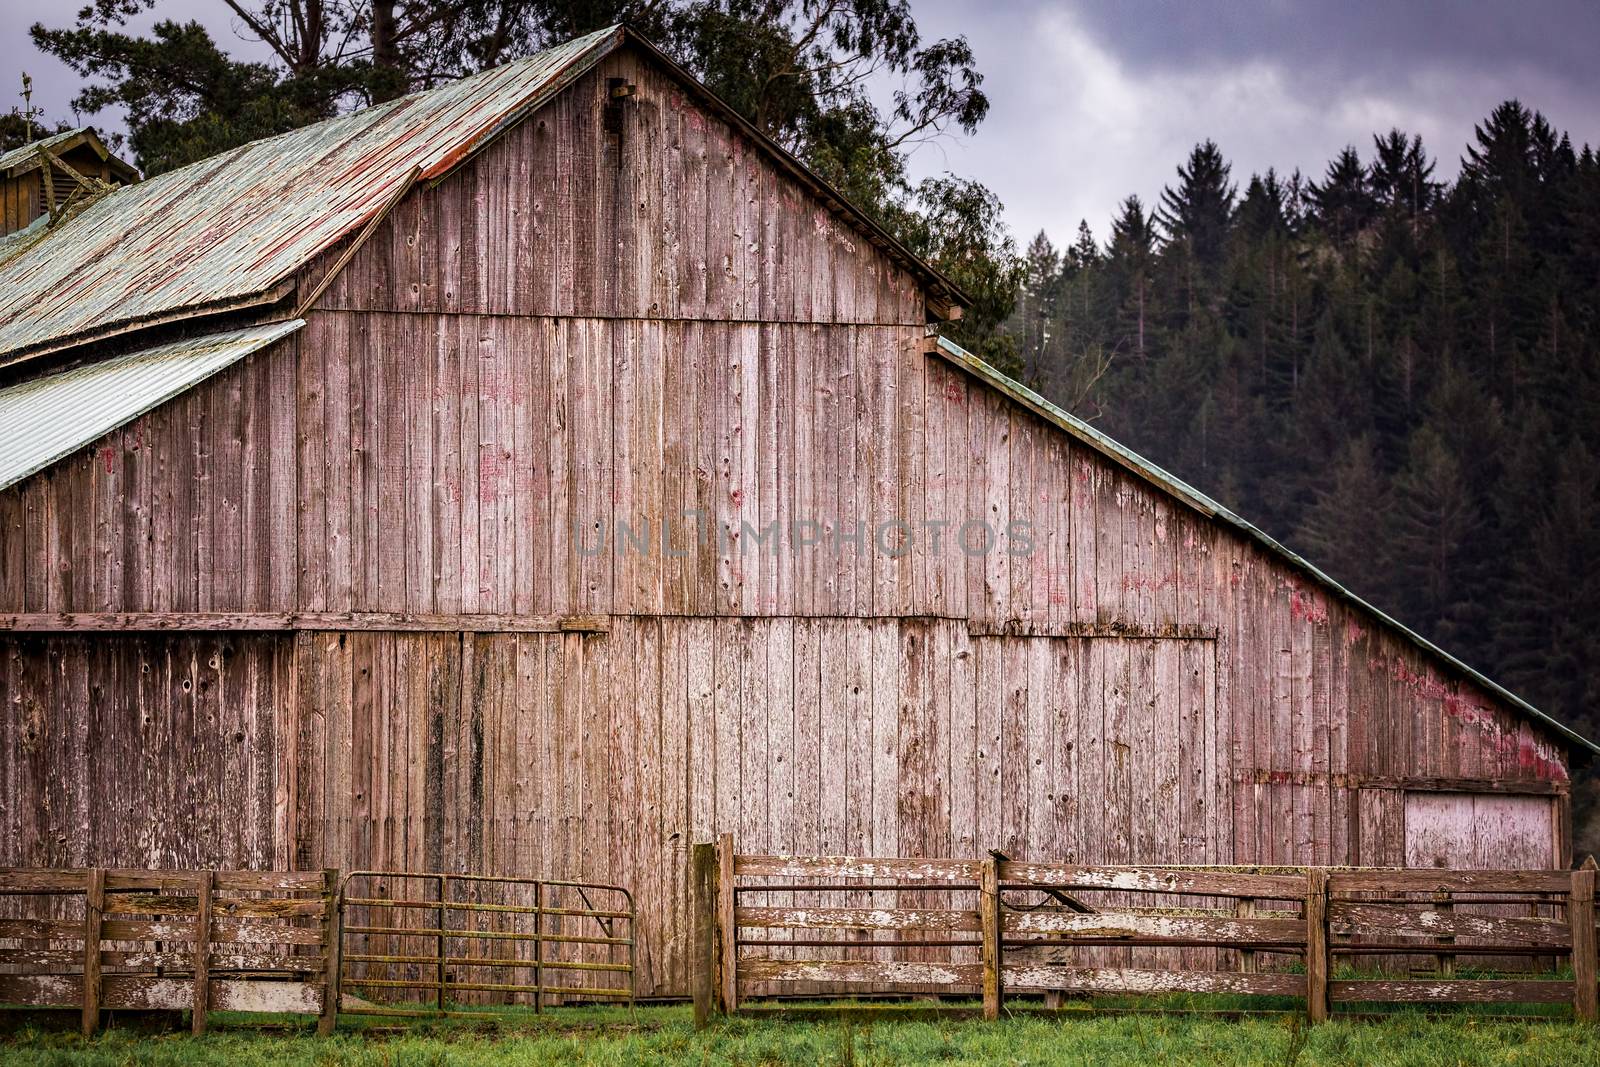 Old Barn Landscape by backyard_photography